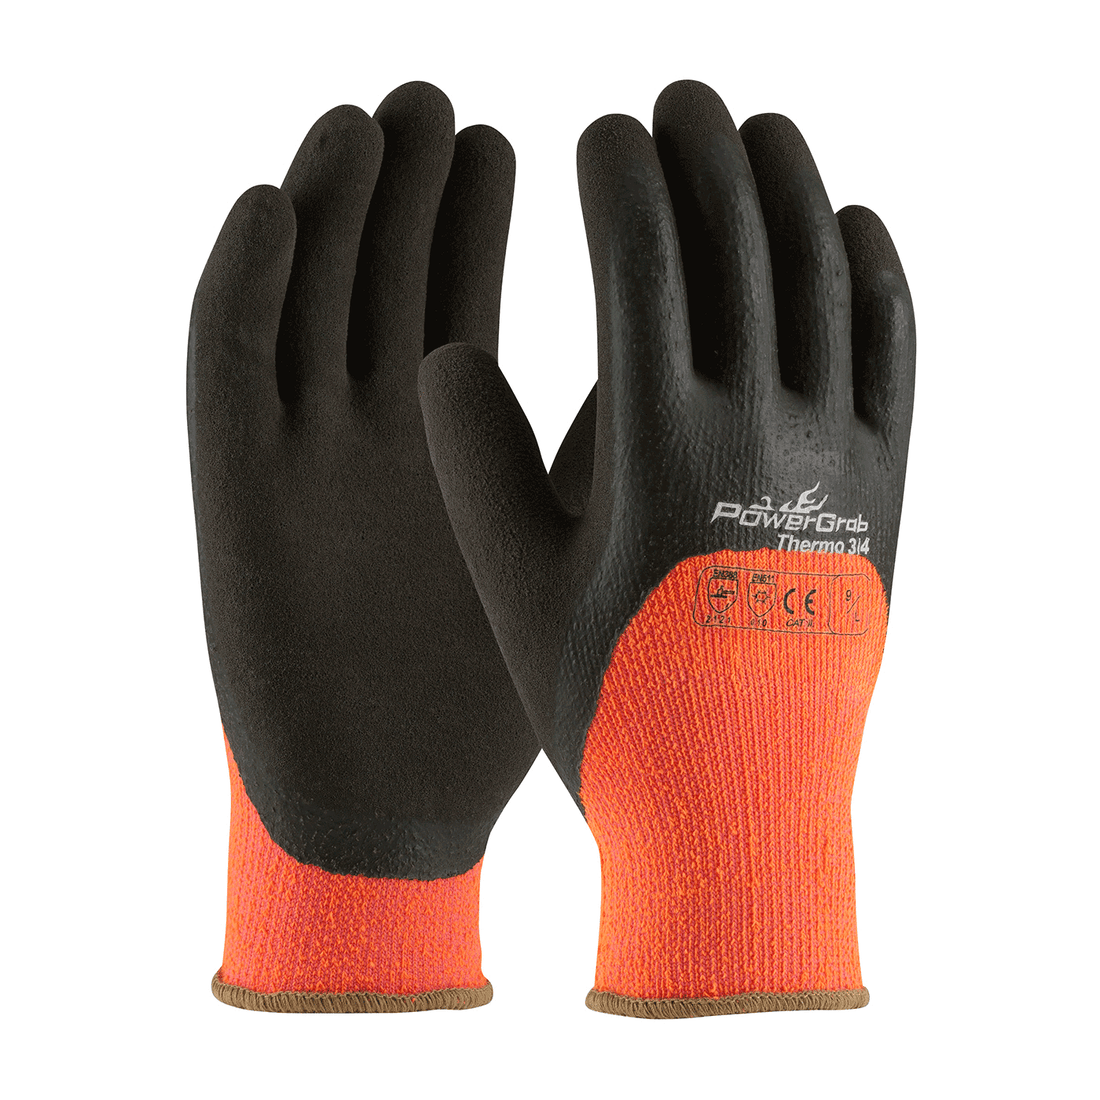 Understanding Winter Work Gloves and Freezer Work Gloves